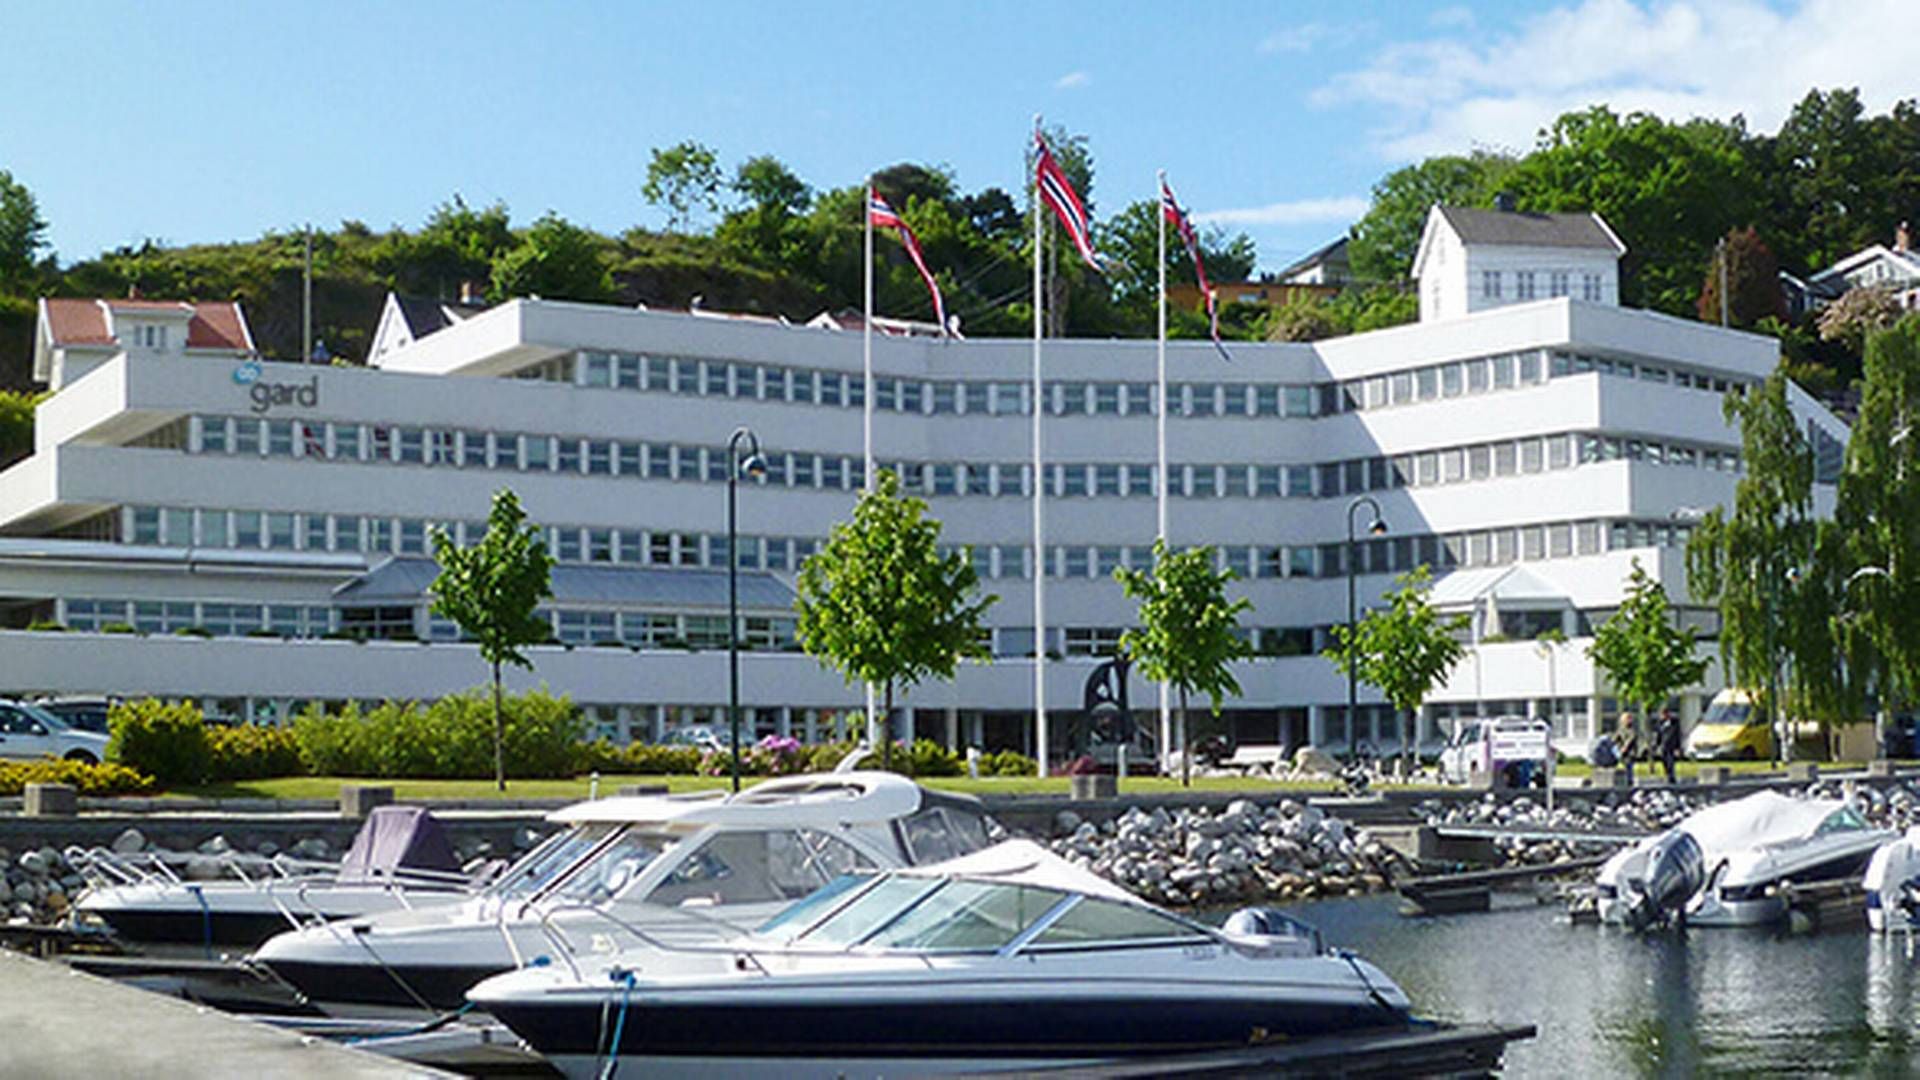 ARENDAL: Gard forsikring har sitt hovedkvarter i havna i Arendal.